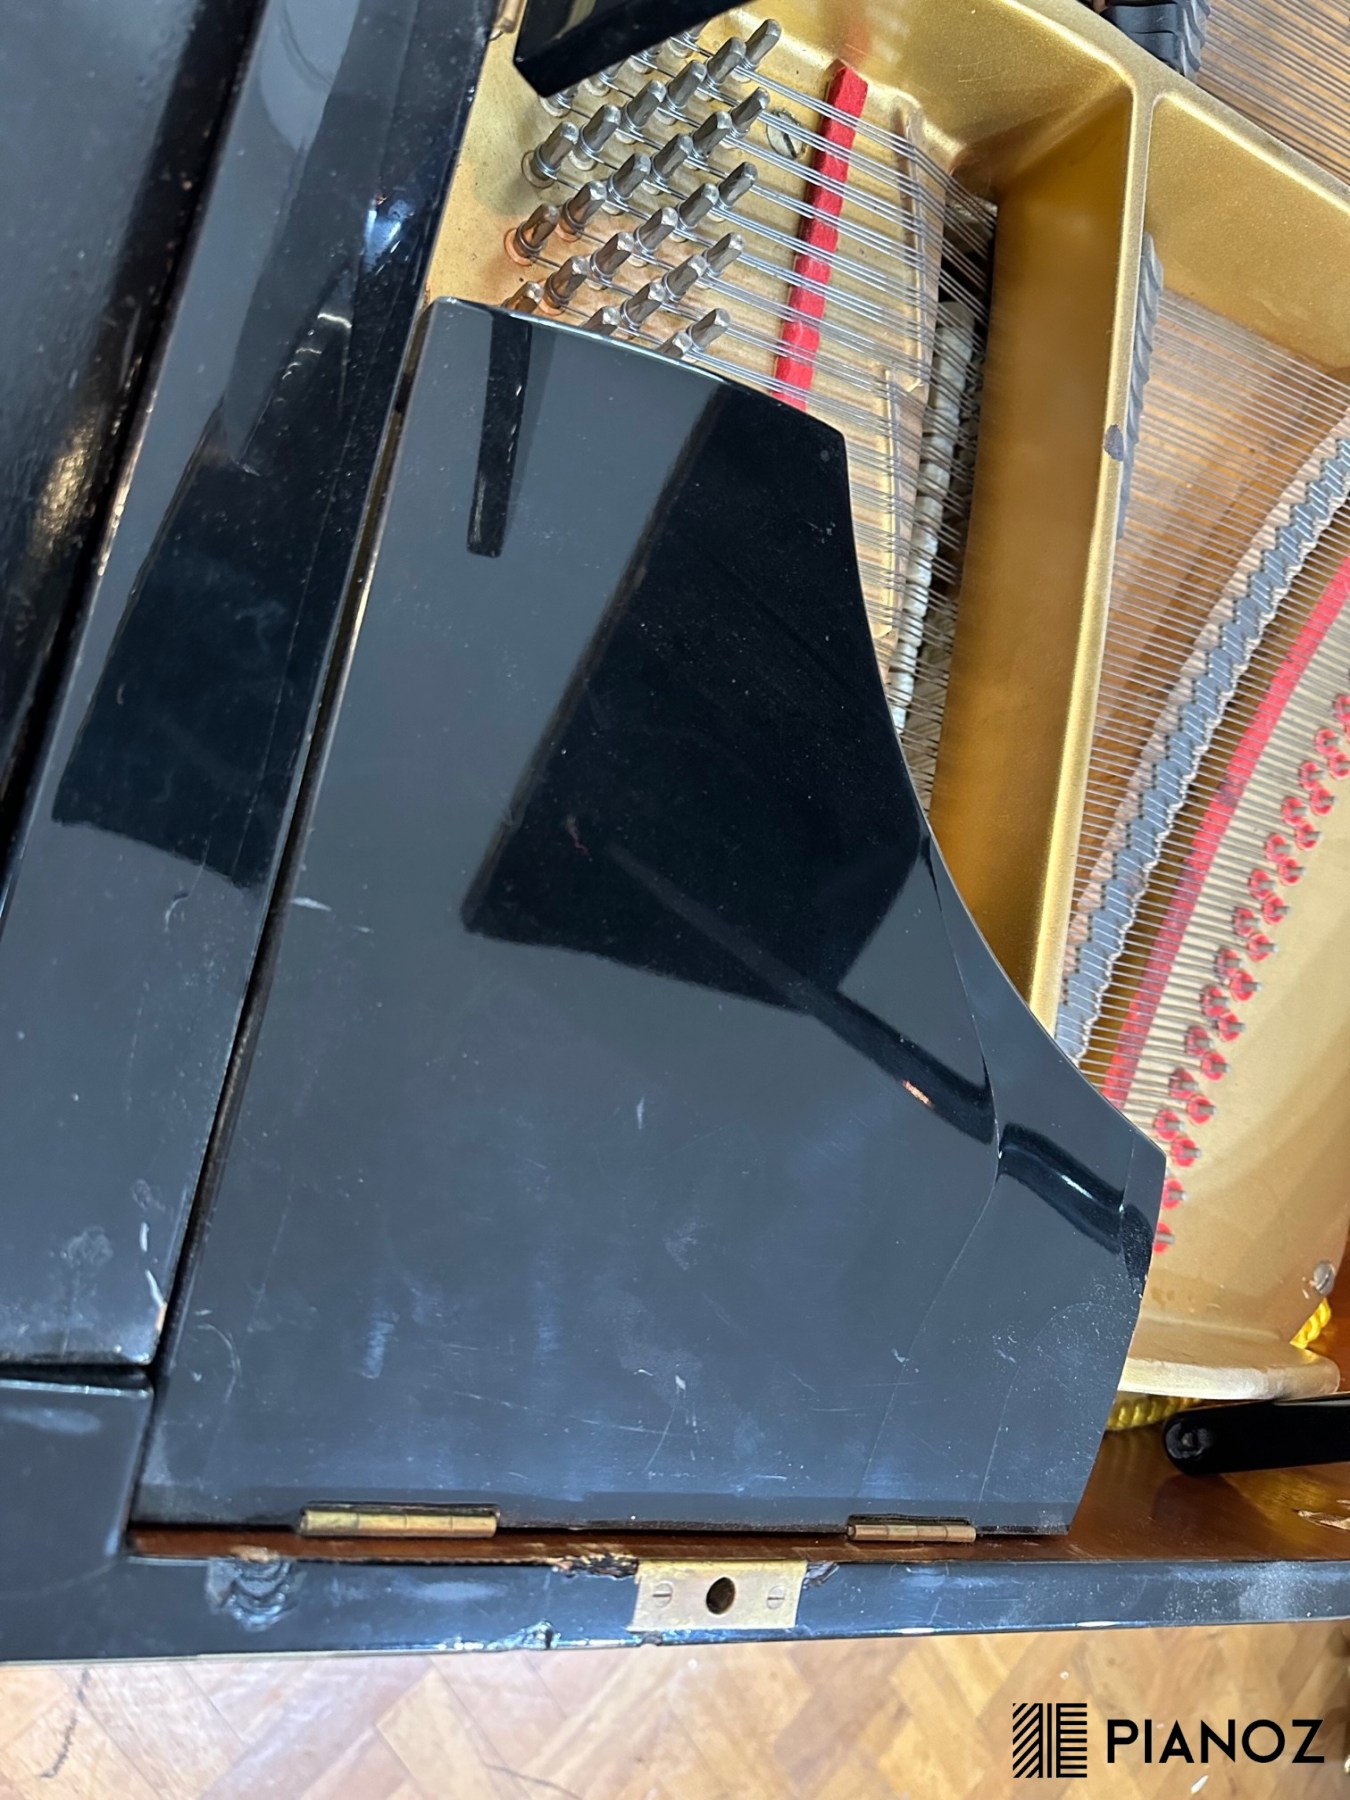 Zimmermann Hupfeld Black Baby Grand Piano piano for sale in UK